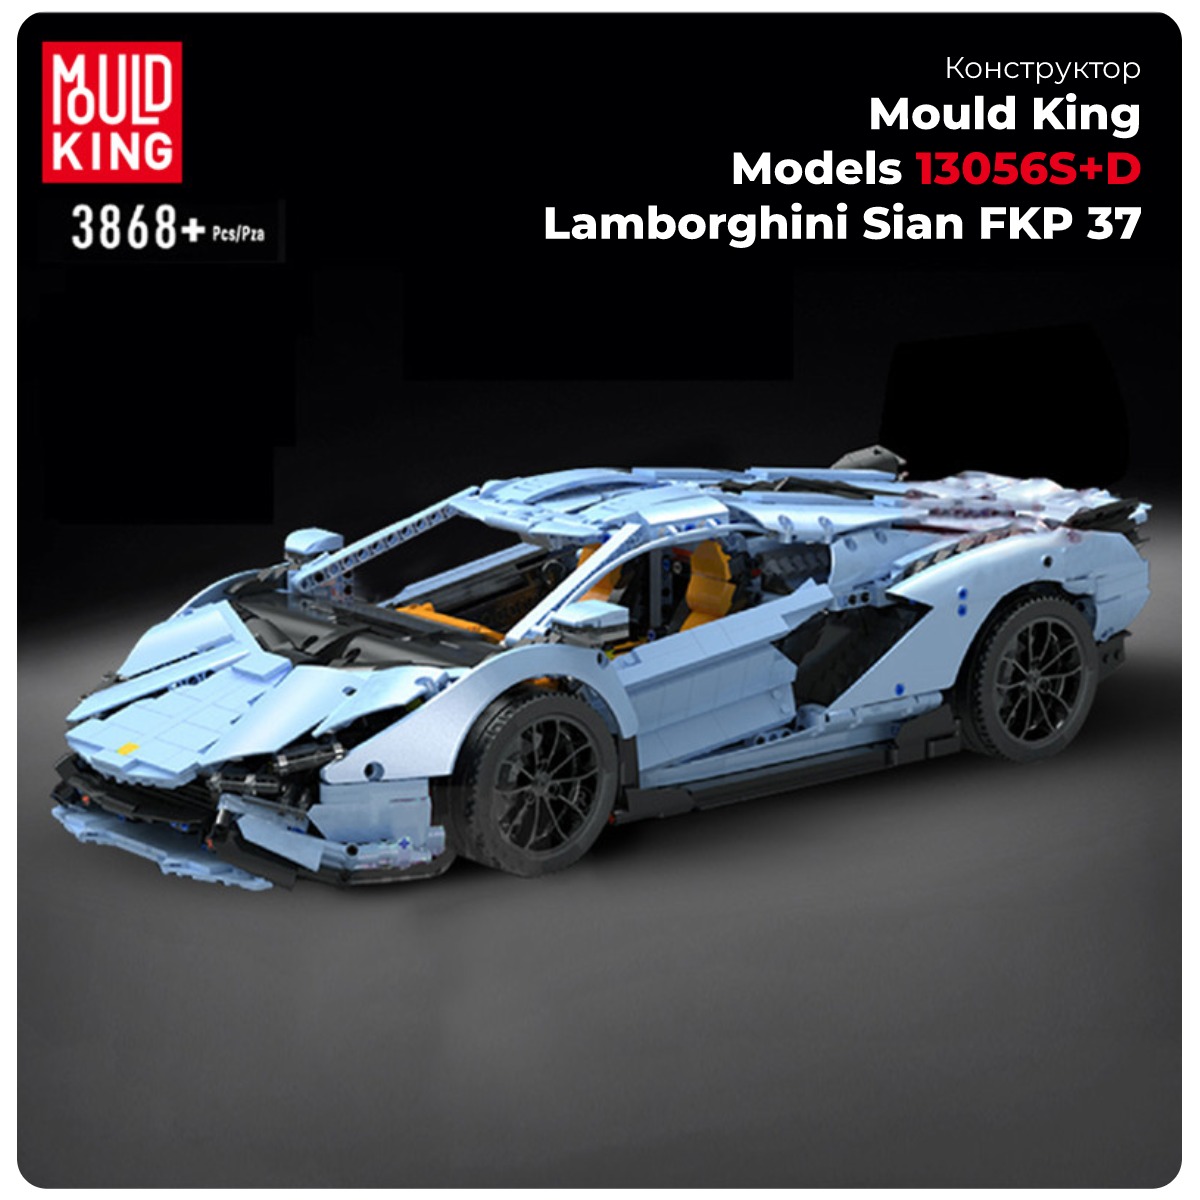 Mould-King-Models-13056SD-Lamborghini-Sian-FKP-37-01